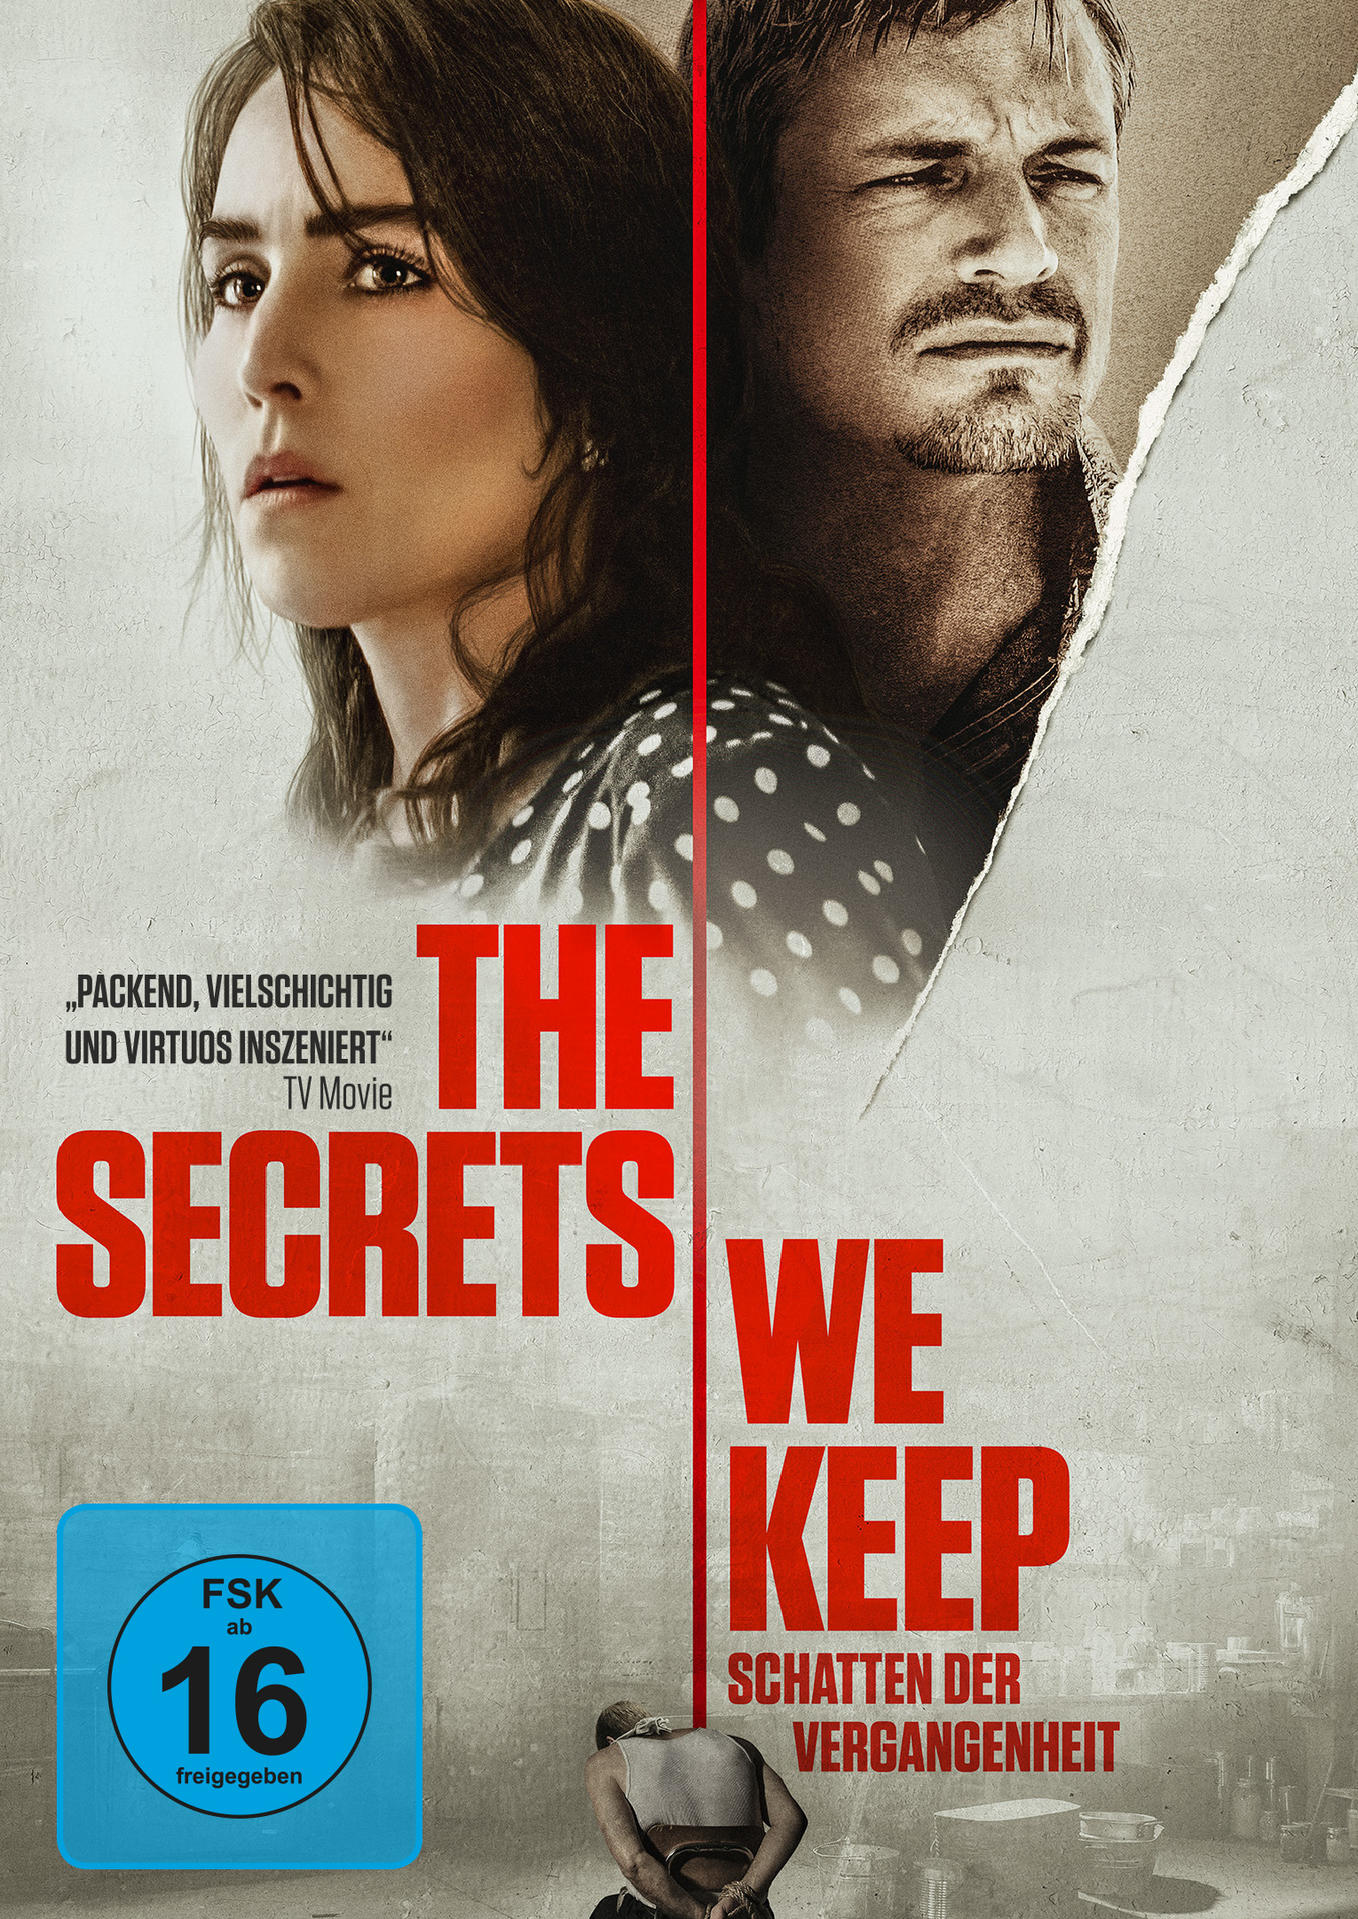 Vergangenheit The We der DVD Secrets Keep Schatten -